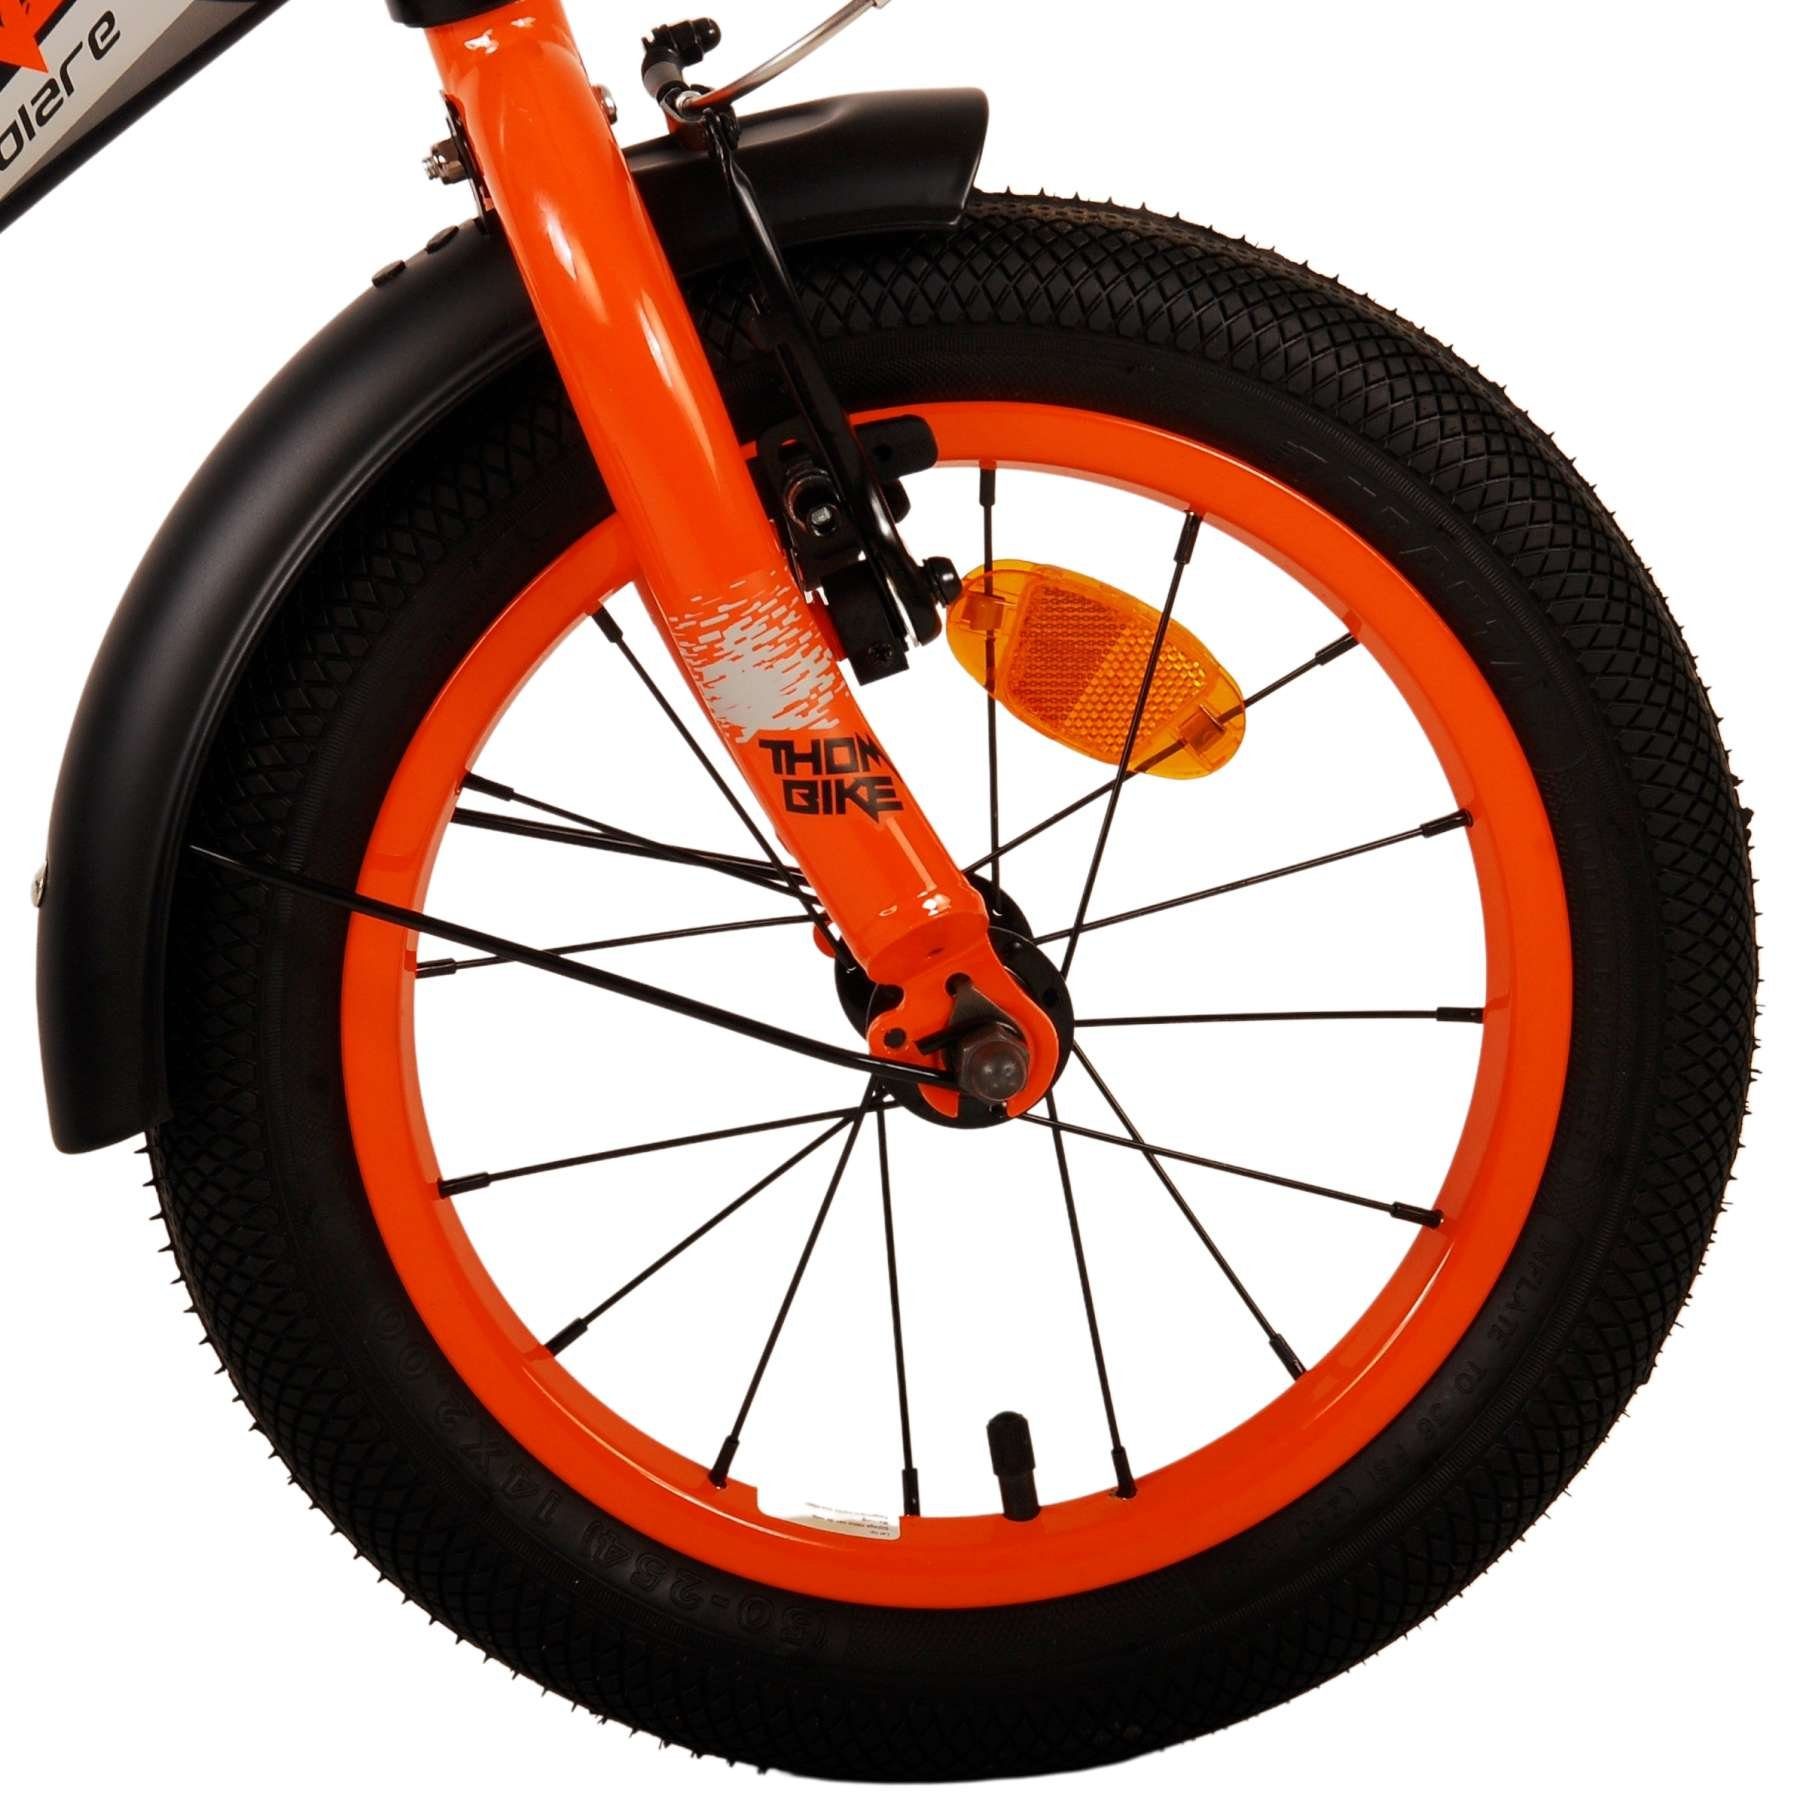 Volare Kinderfahrrad Thombike - 12 bis - 5 Zweihandbremsen 3 kg, - 60 oder Lenkerhöhe 85% Zoll einstellbar schwarz-orange 14 Jahre, - zusammengebaut